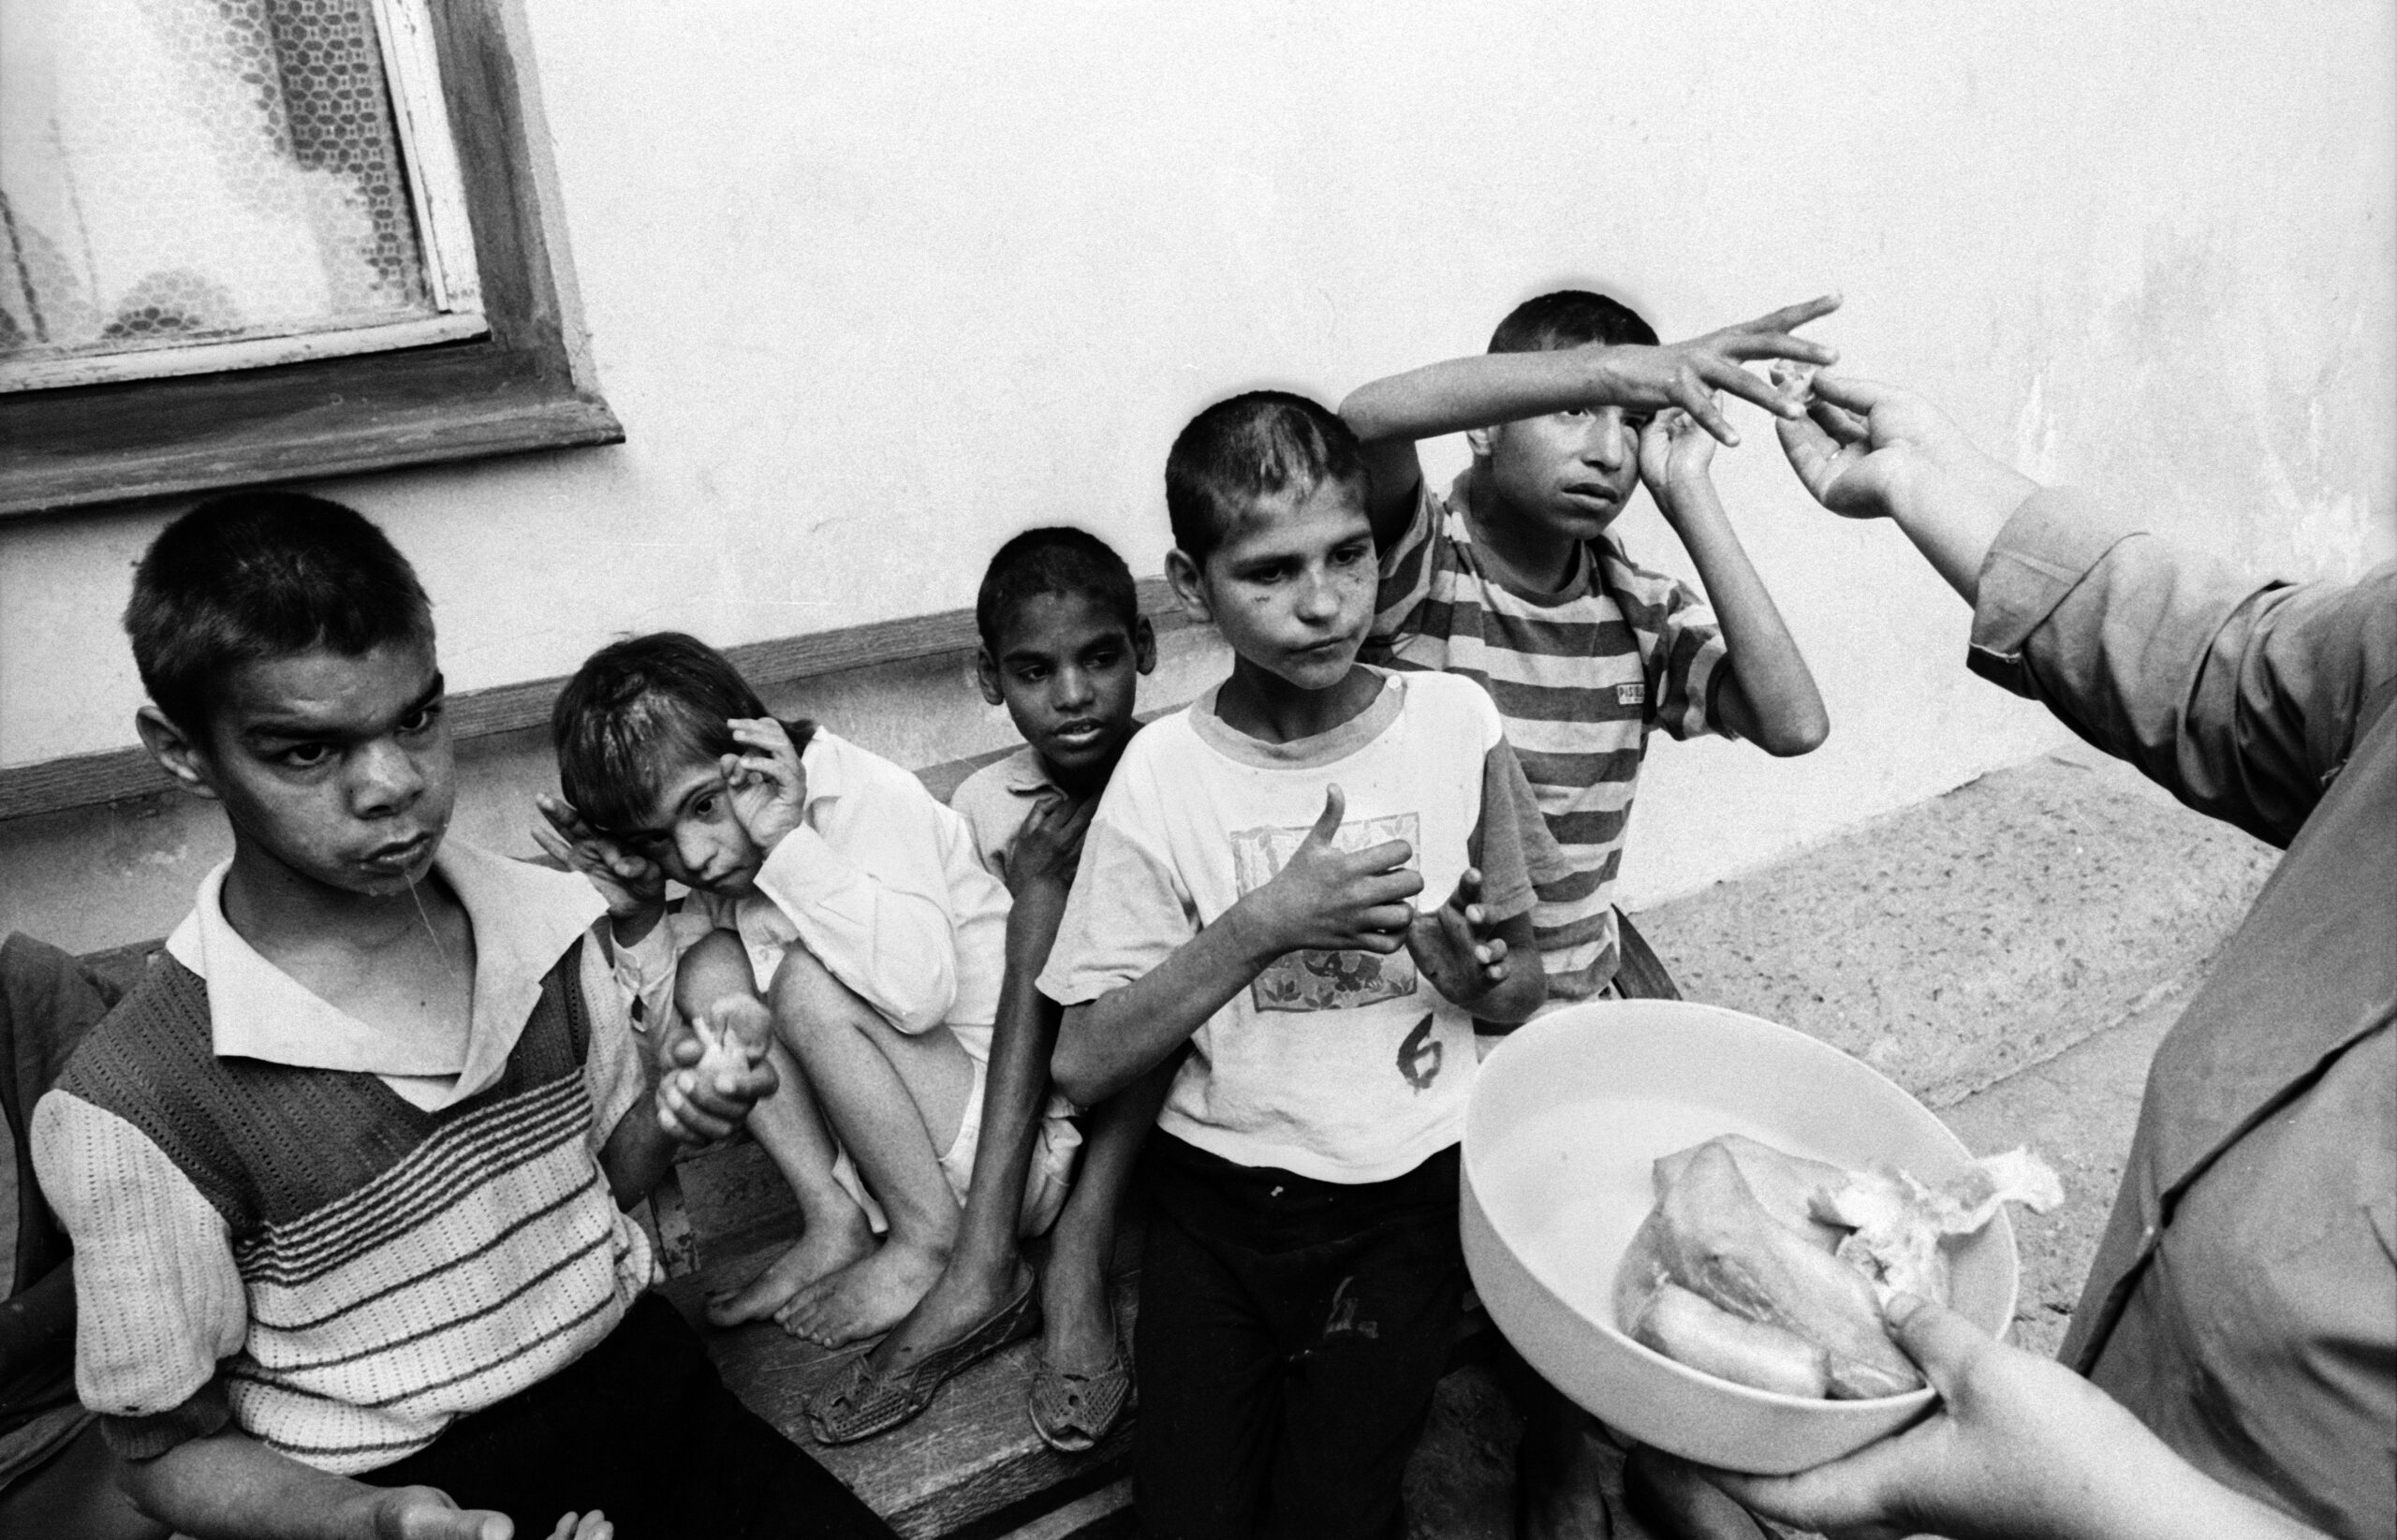 Les enfants se précipitent sur un arrivage de beignets. La nourriture est rare dans l’orphelinat d’Horia isolé en pleine campagne.